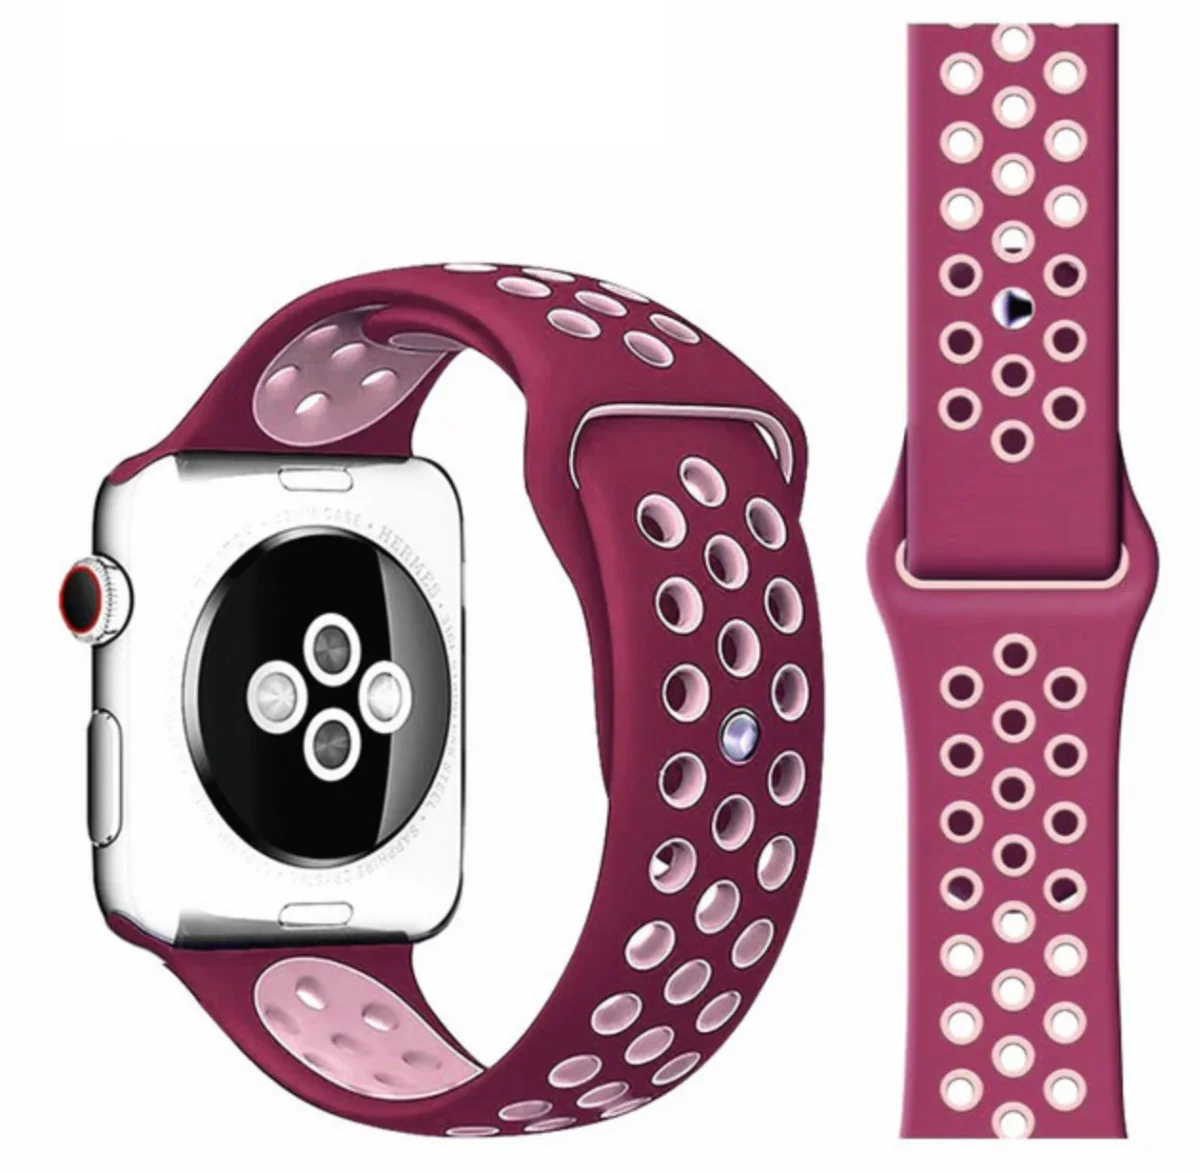 Řemínek iMore SPORT pro Apple Watch Series 4/5/6/SE (40mm) - Vínový/Růžový